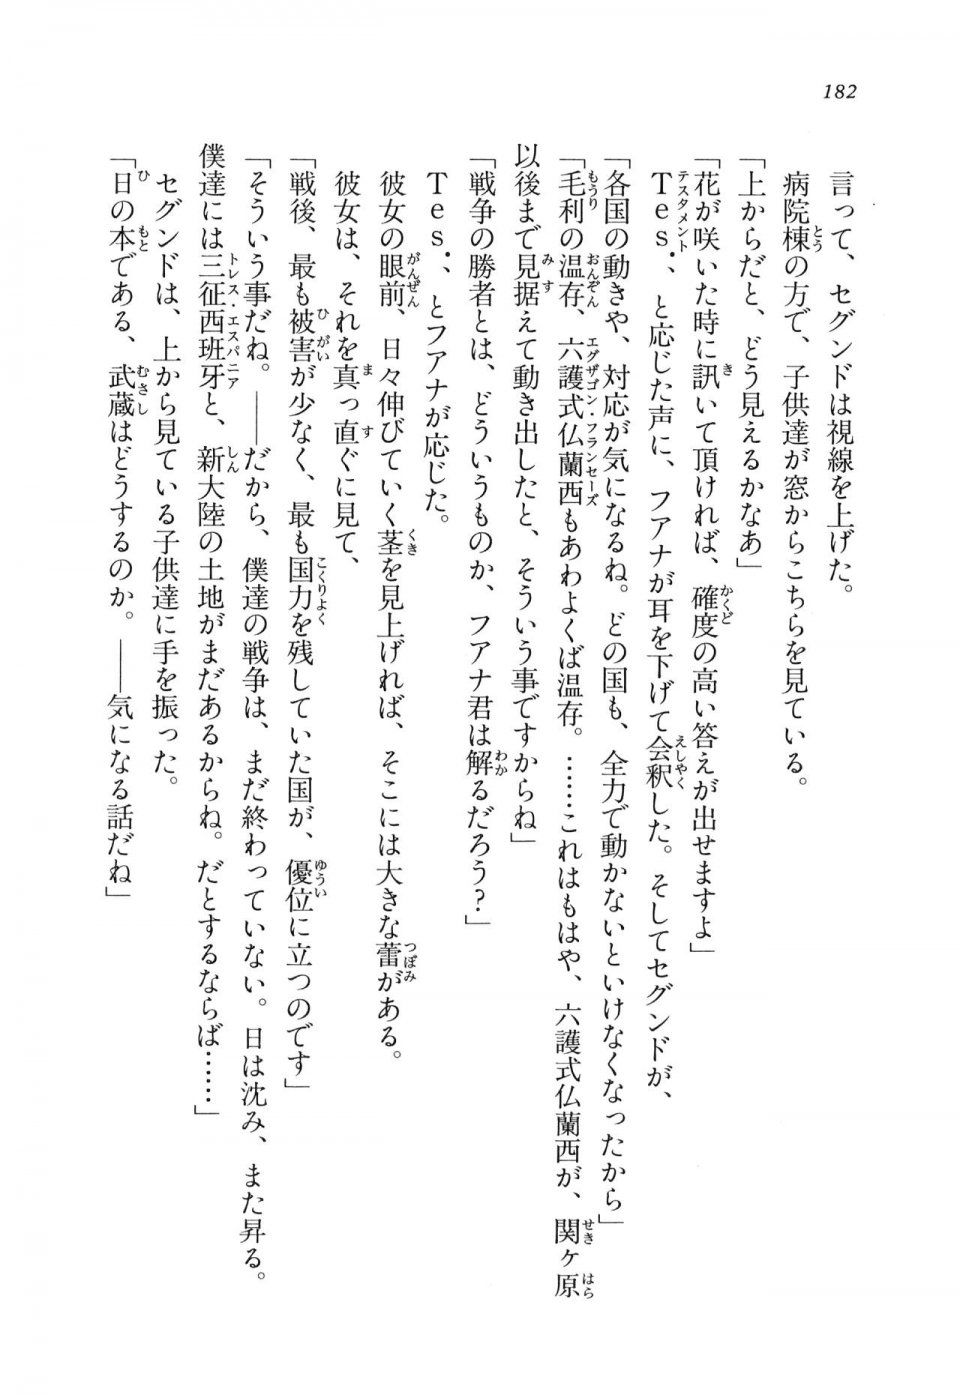 Kyoukai Senjou no Horizon LN Vol 11(5A) - Photo #182